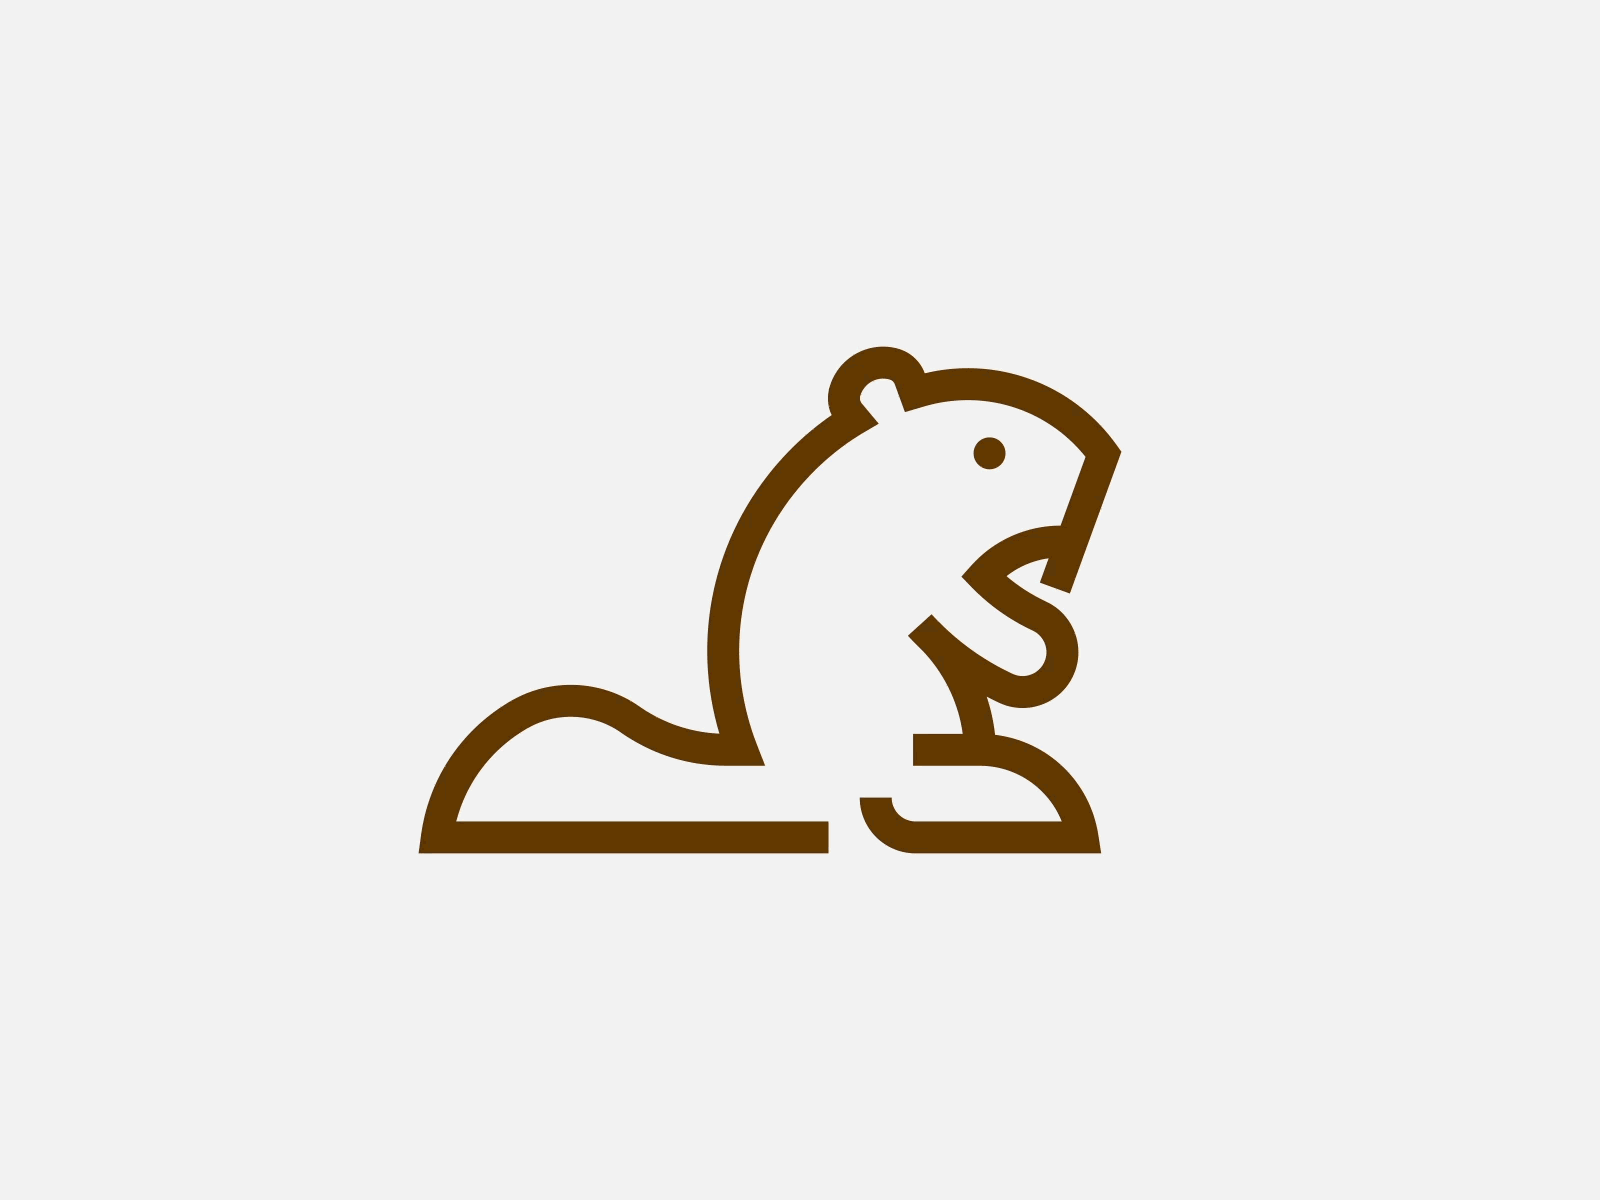 Beaver Logomark animal animal logo beaver beaver logo beaver mark branding golden ratio grid identity logo logo grid logomark mark